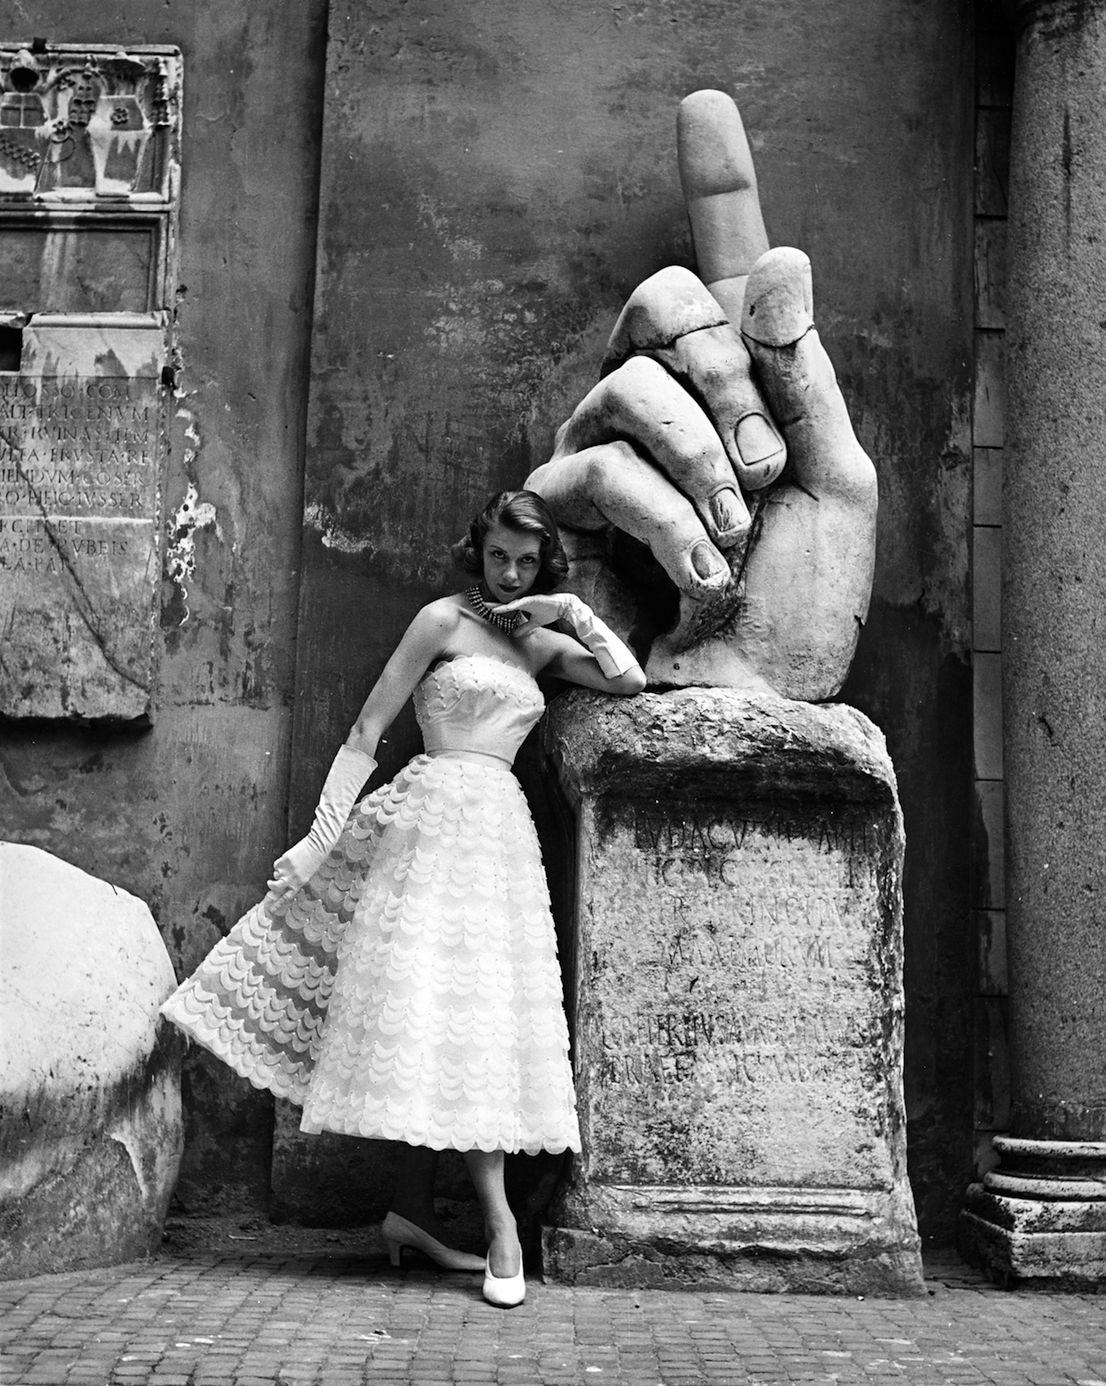 La modella, fotografata ai Musei Capitolini davanti alla mano della statua monumentale di Costantino I, indossa un modello delle Sorelle Fontana (pubblicata sulla rivista La Donna) Foto di Regina Relang, 1952. Courtesy Münchner Stadtmuseum, Sammlung Fotografie, Archiv Relang.